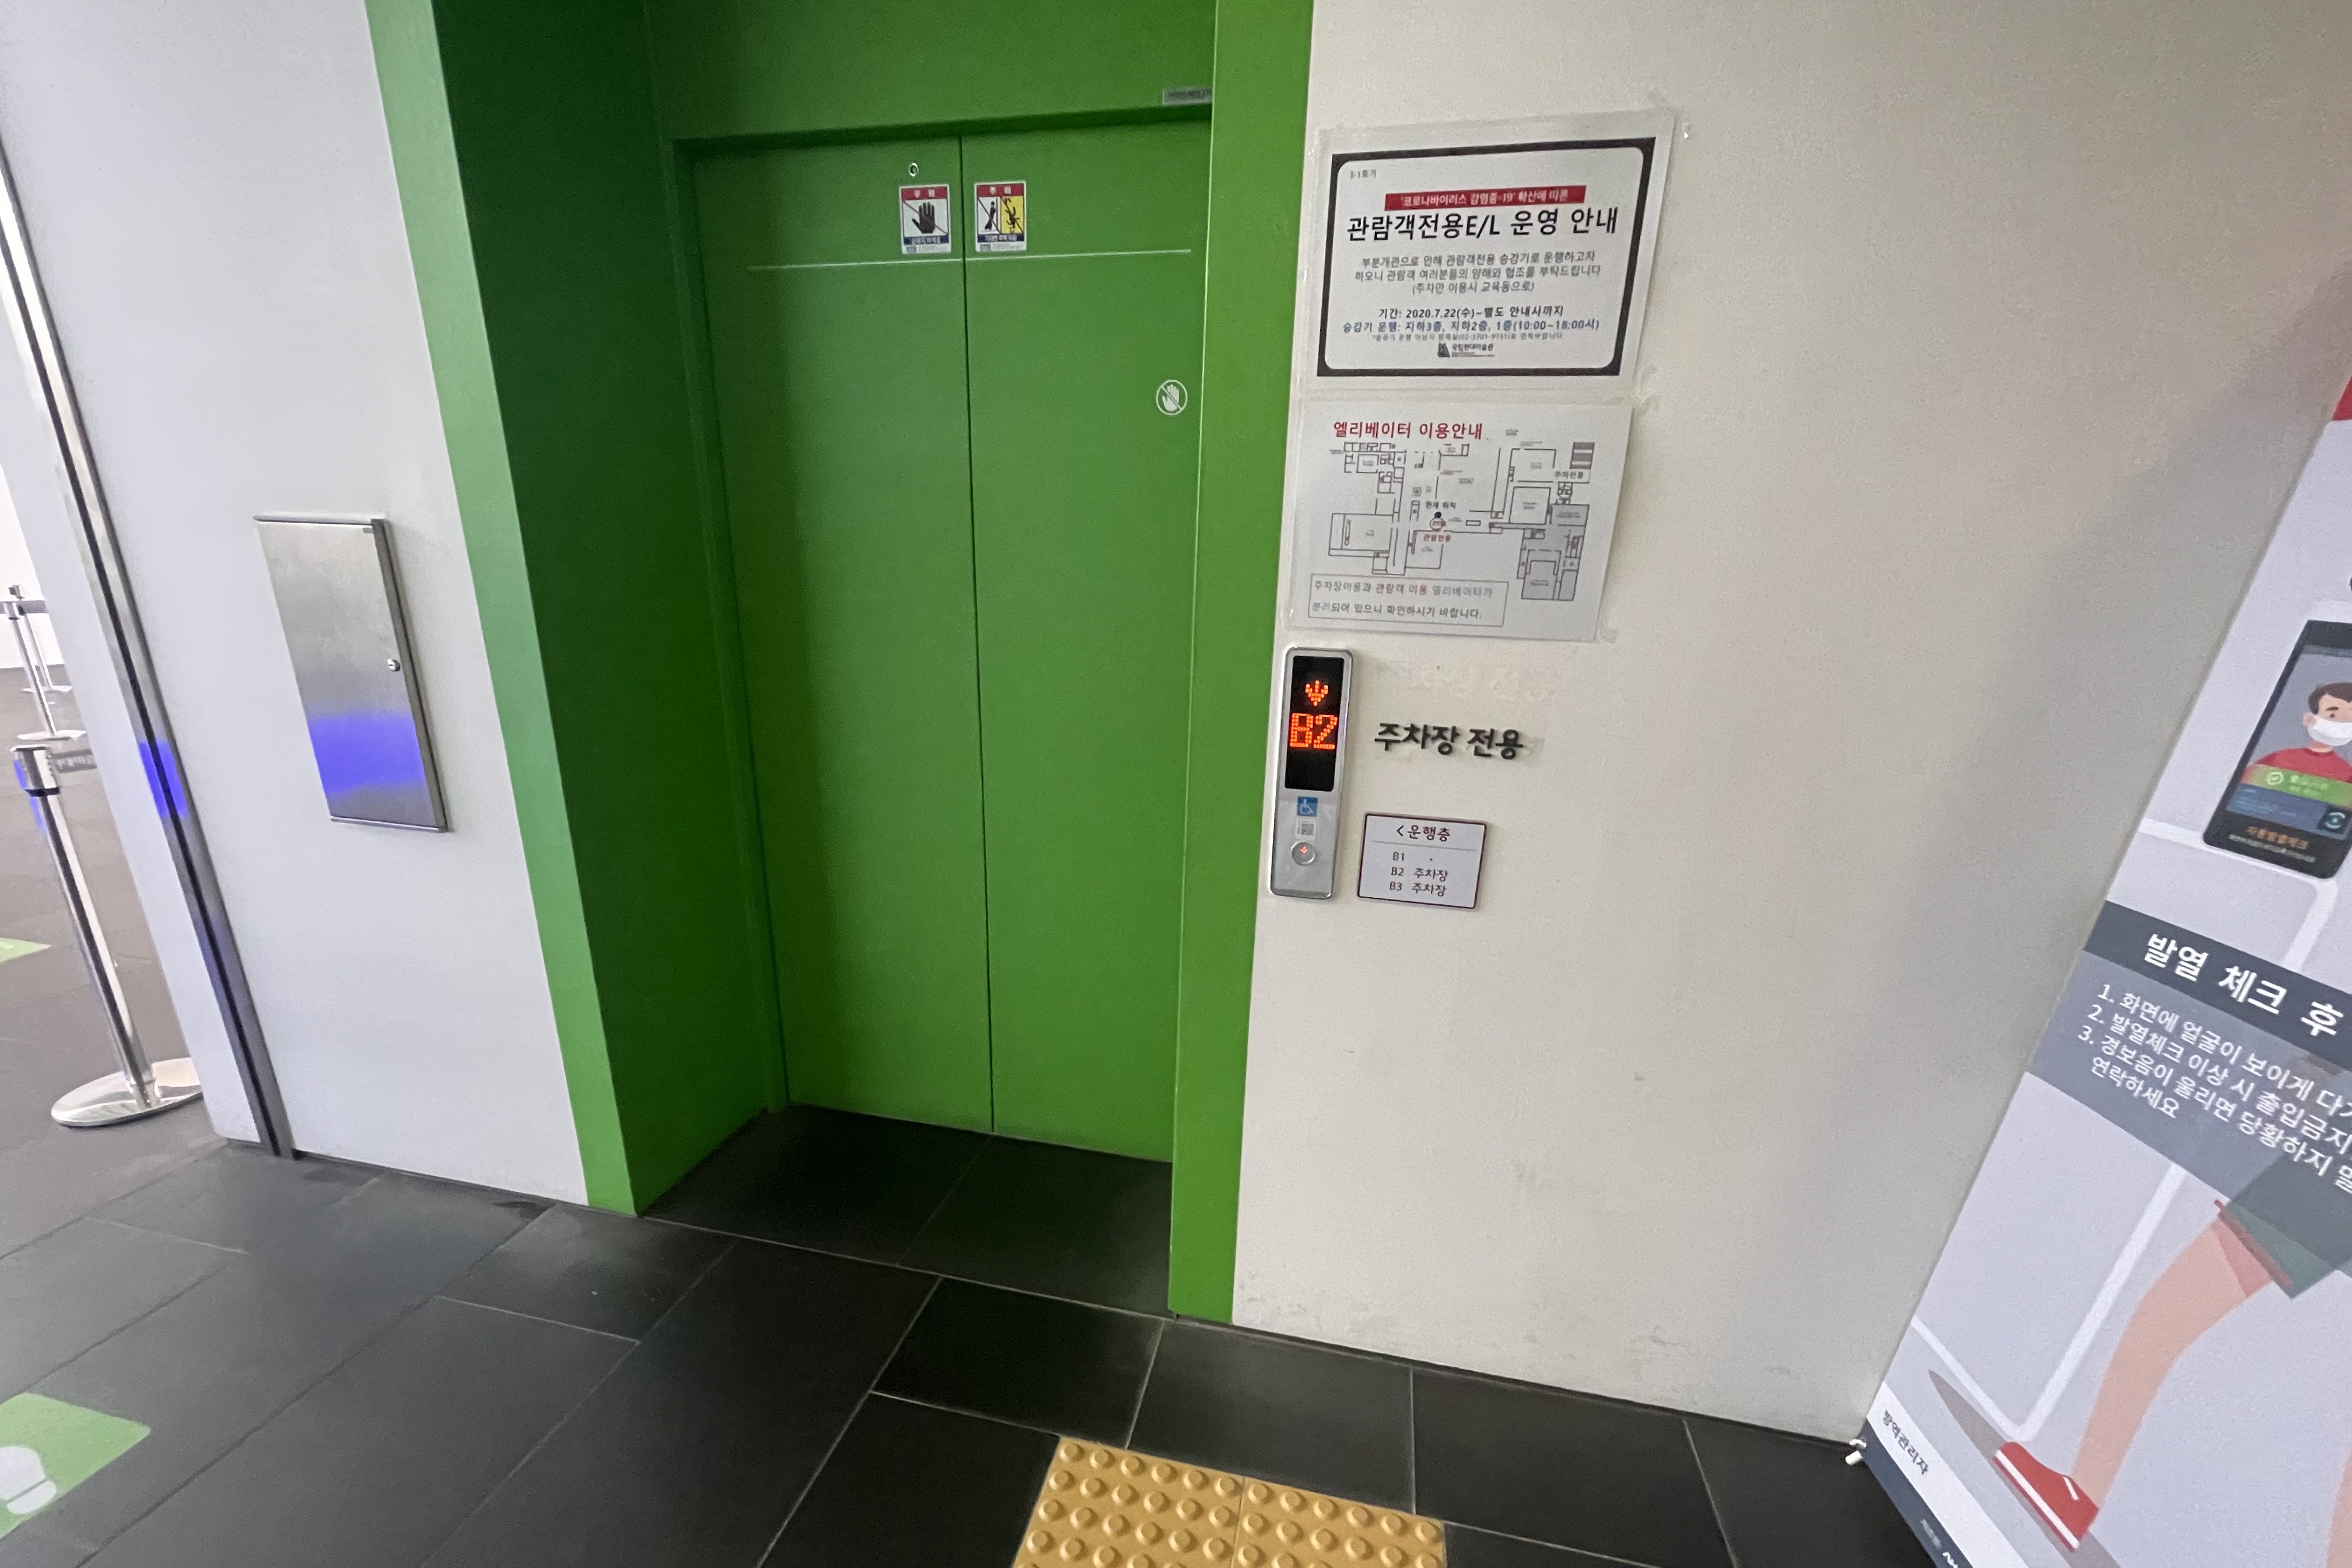 엘리베이터0 : 국립현대미술관서울관 엘리베이터 입구